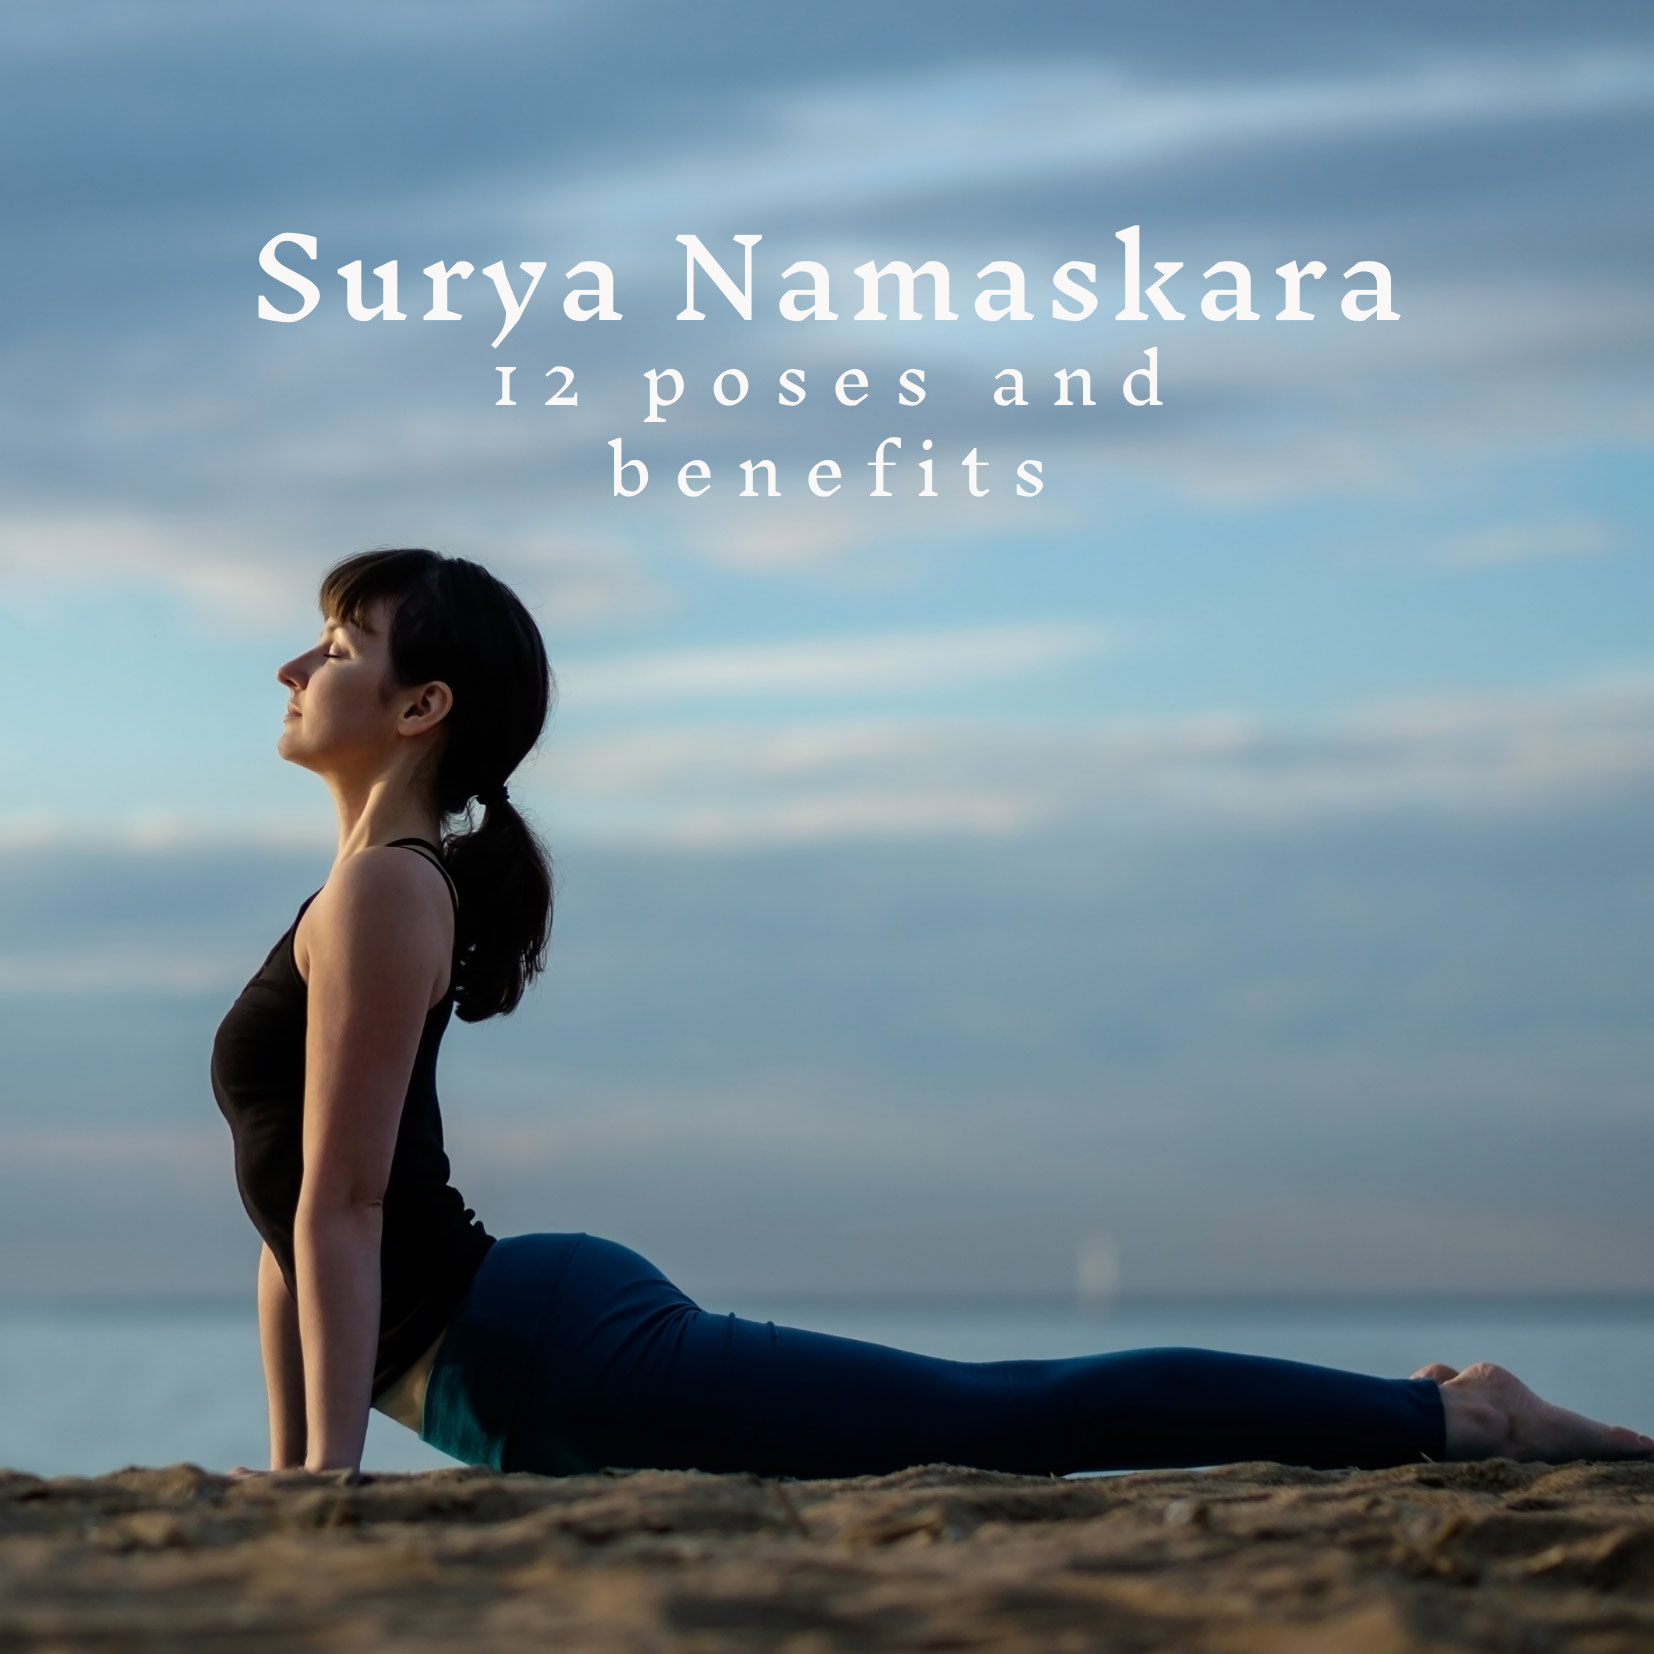 Postures of Surya Namaskar. | Download Scientific Diagram